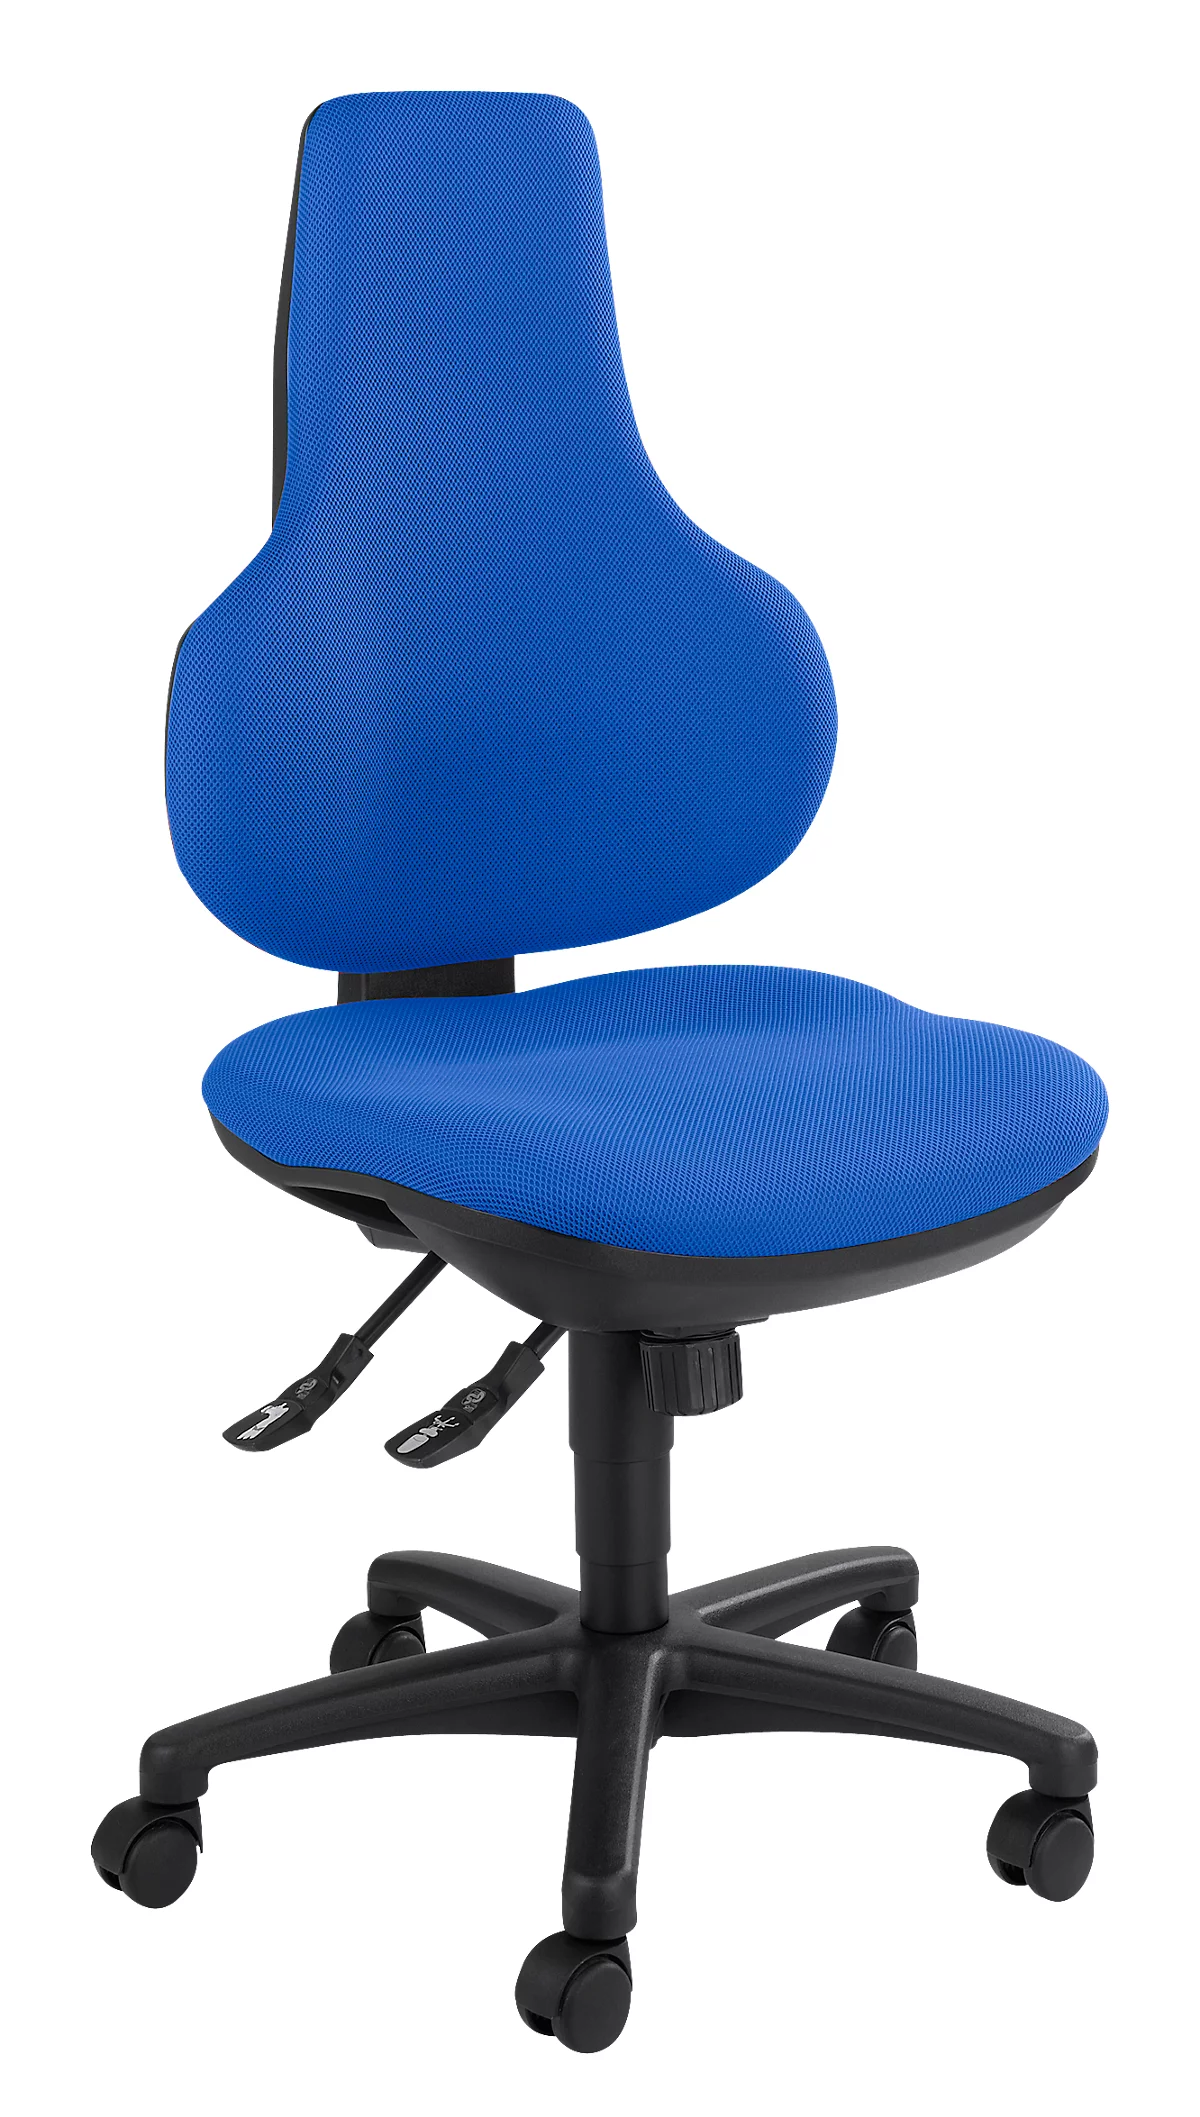 Silla de oficina Topstar ERGO POINT, mecanismo sincronizado, sin reposabrazos, asiento ergonómico especial, azul